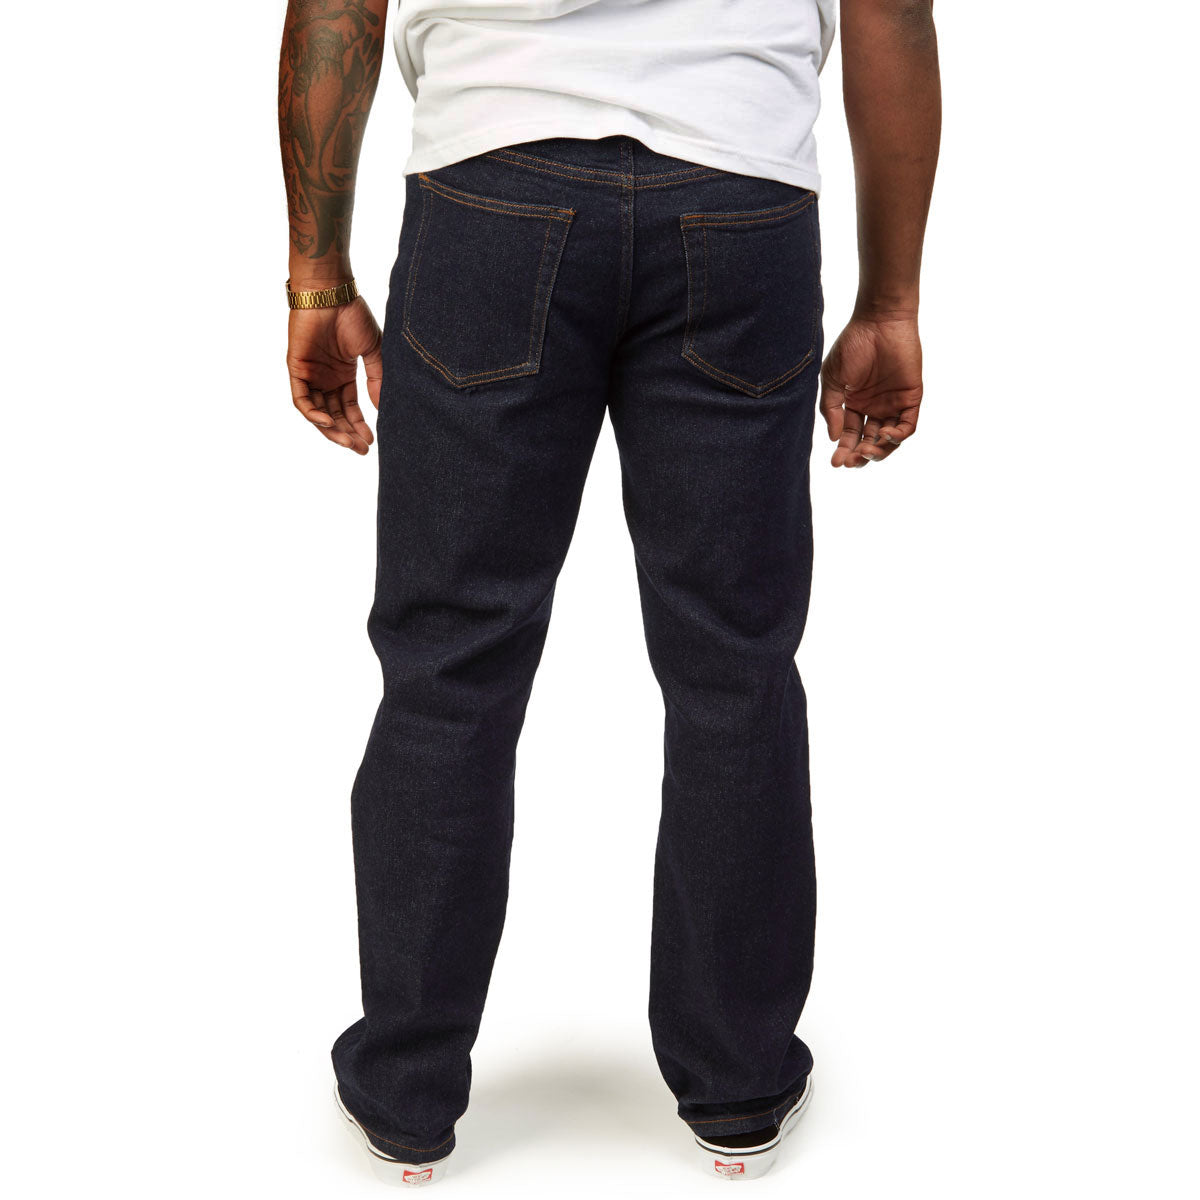 CCS 12oz Stretch Straight Denim Jeans - 12oz Indigo image 4